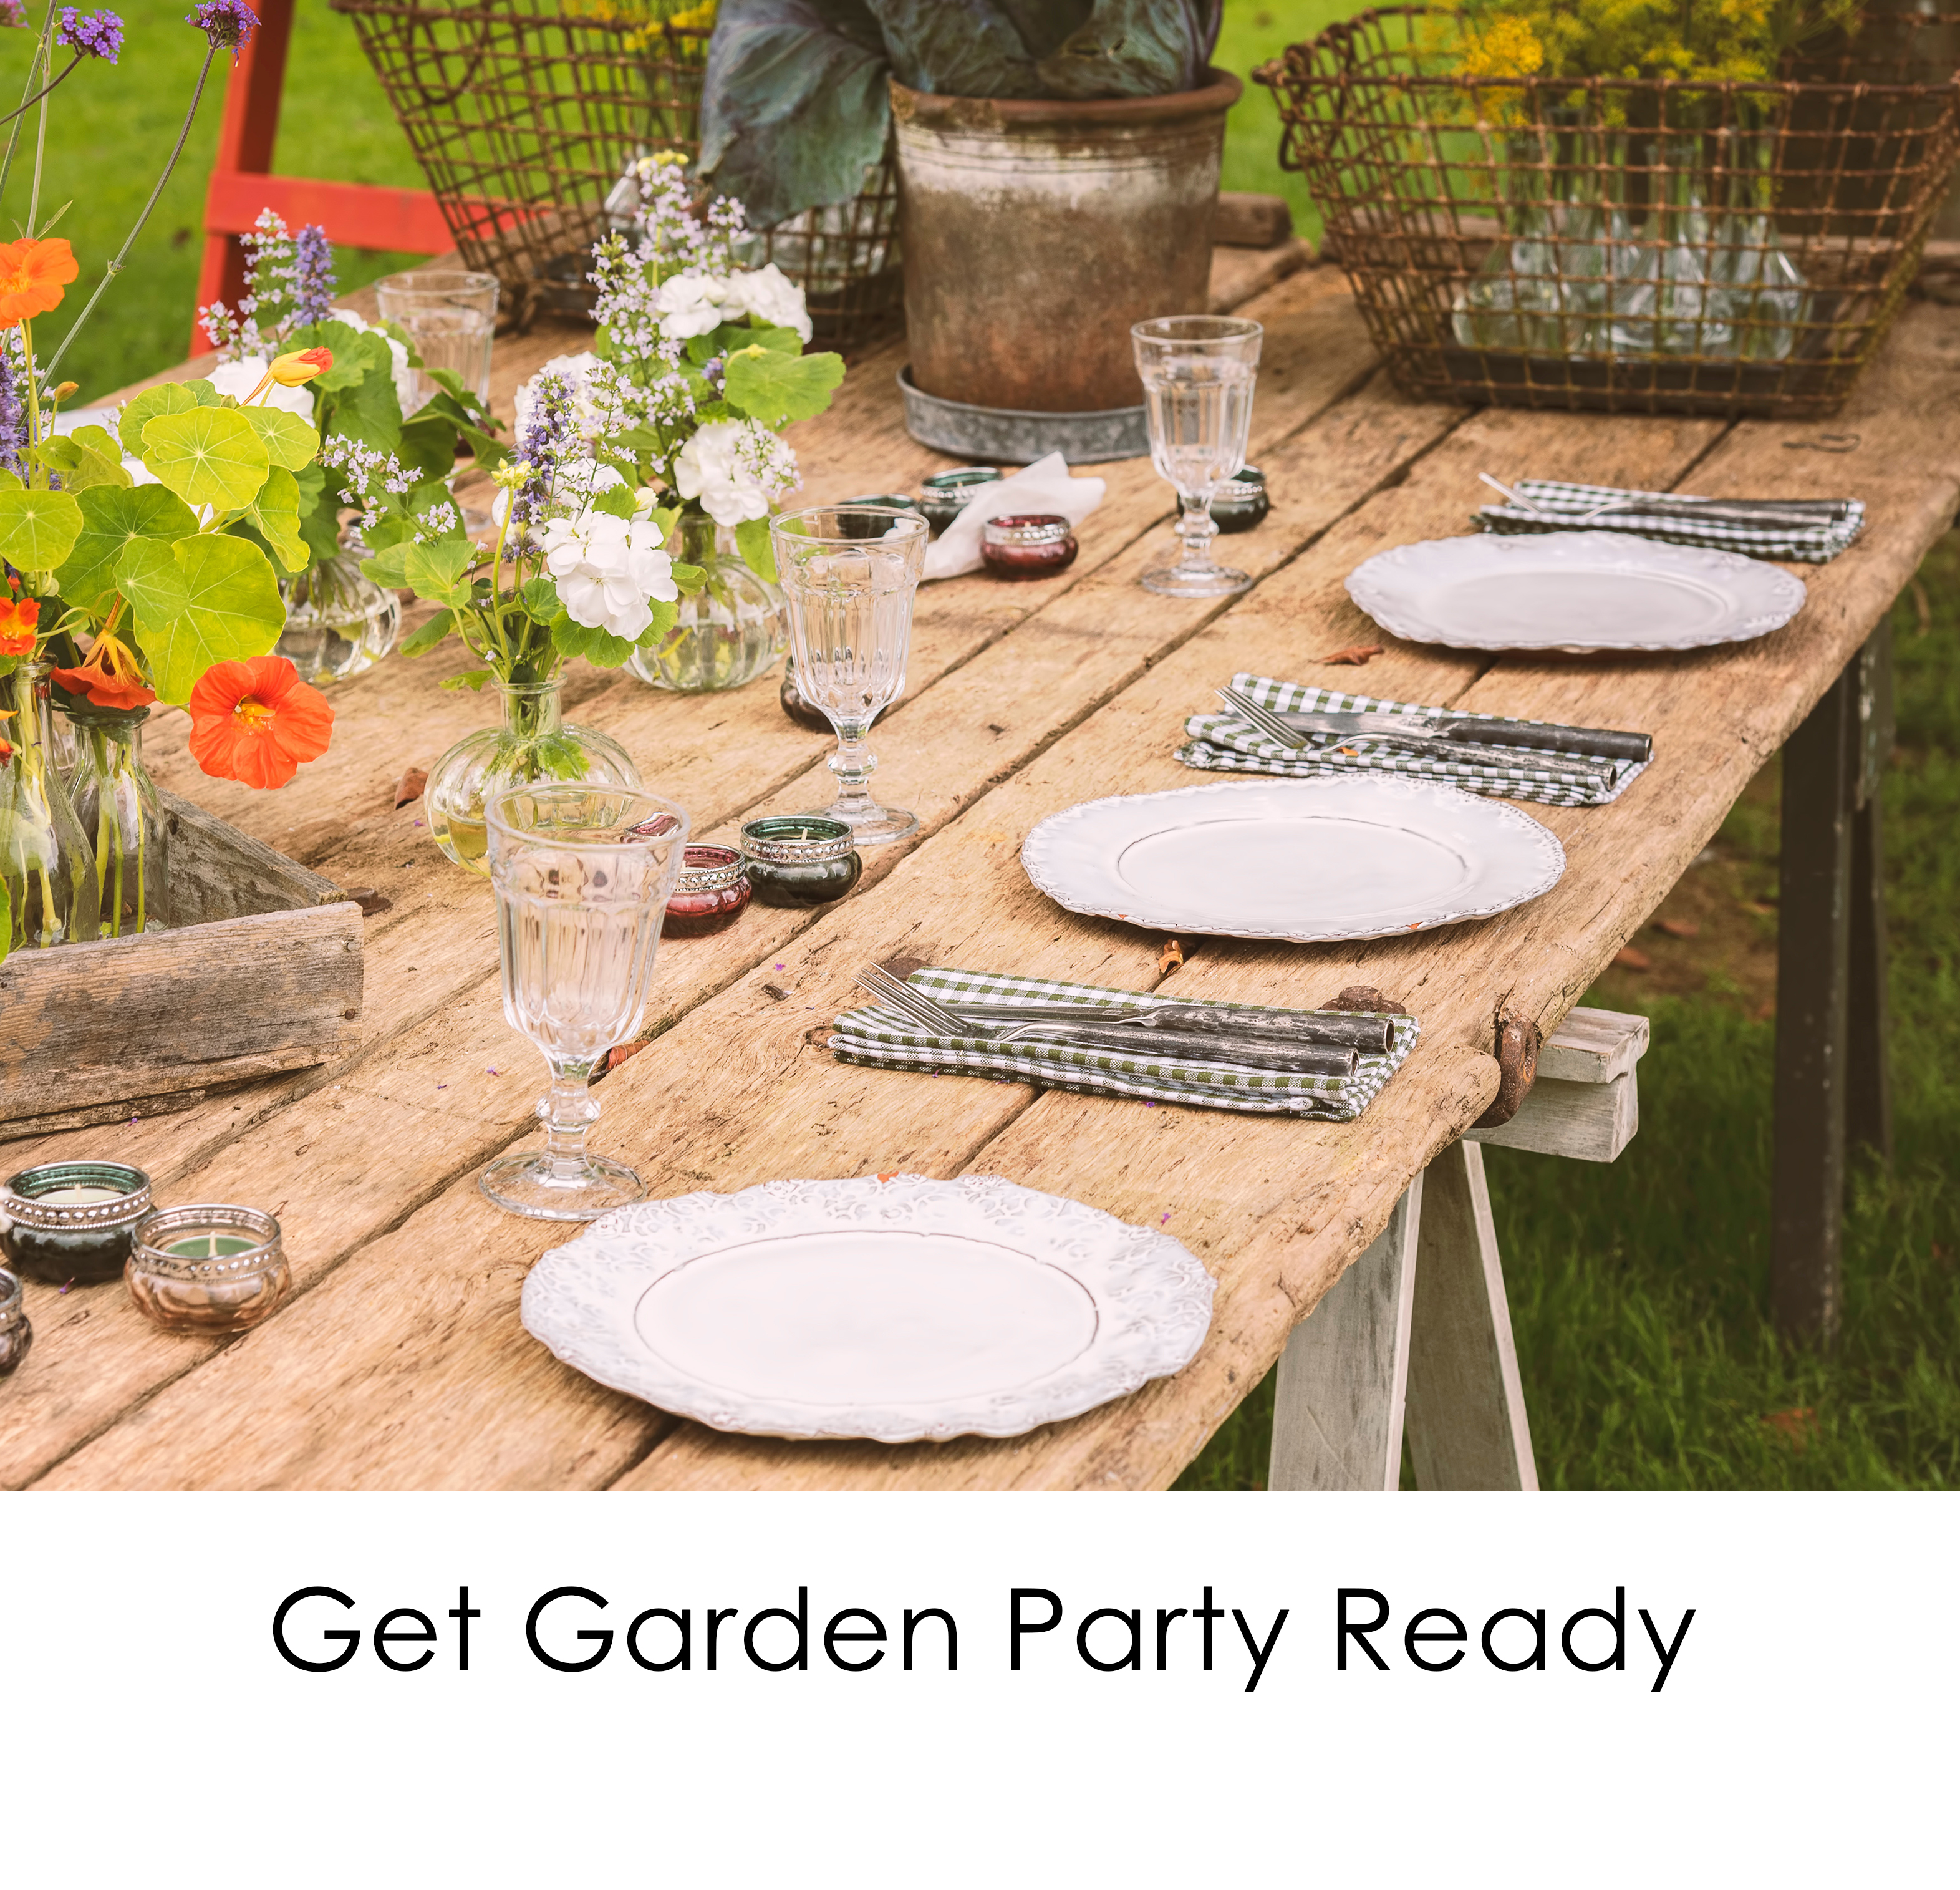 Get Garden Party Ready